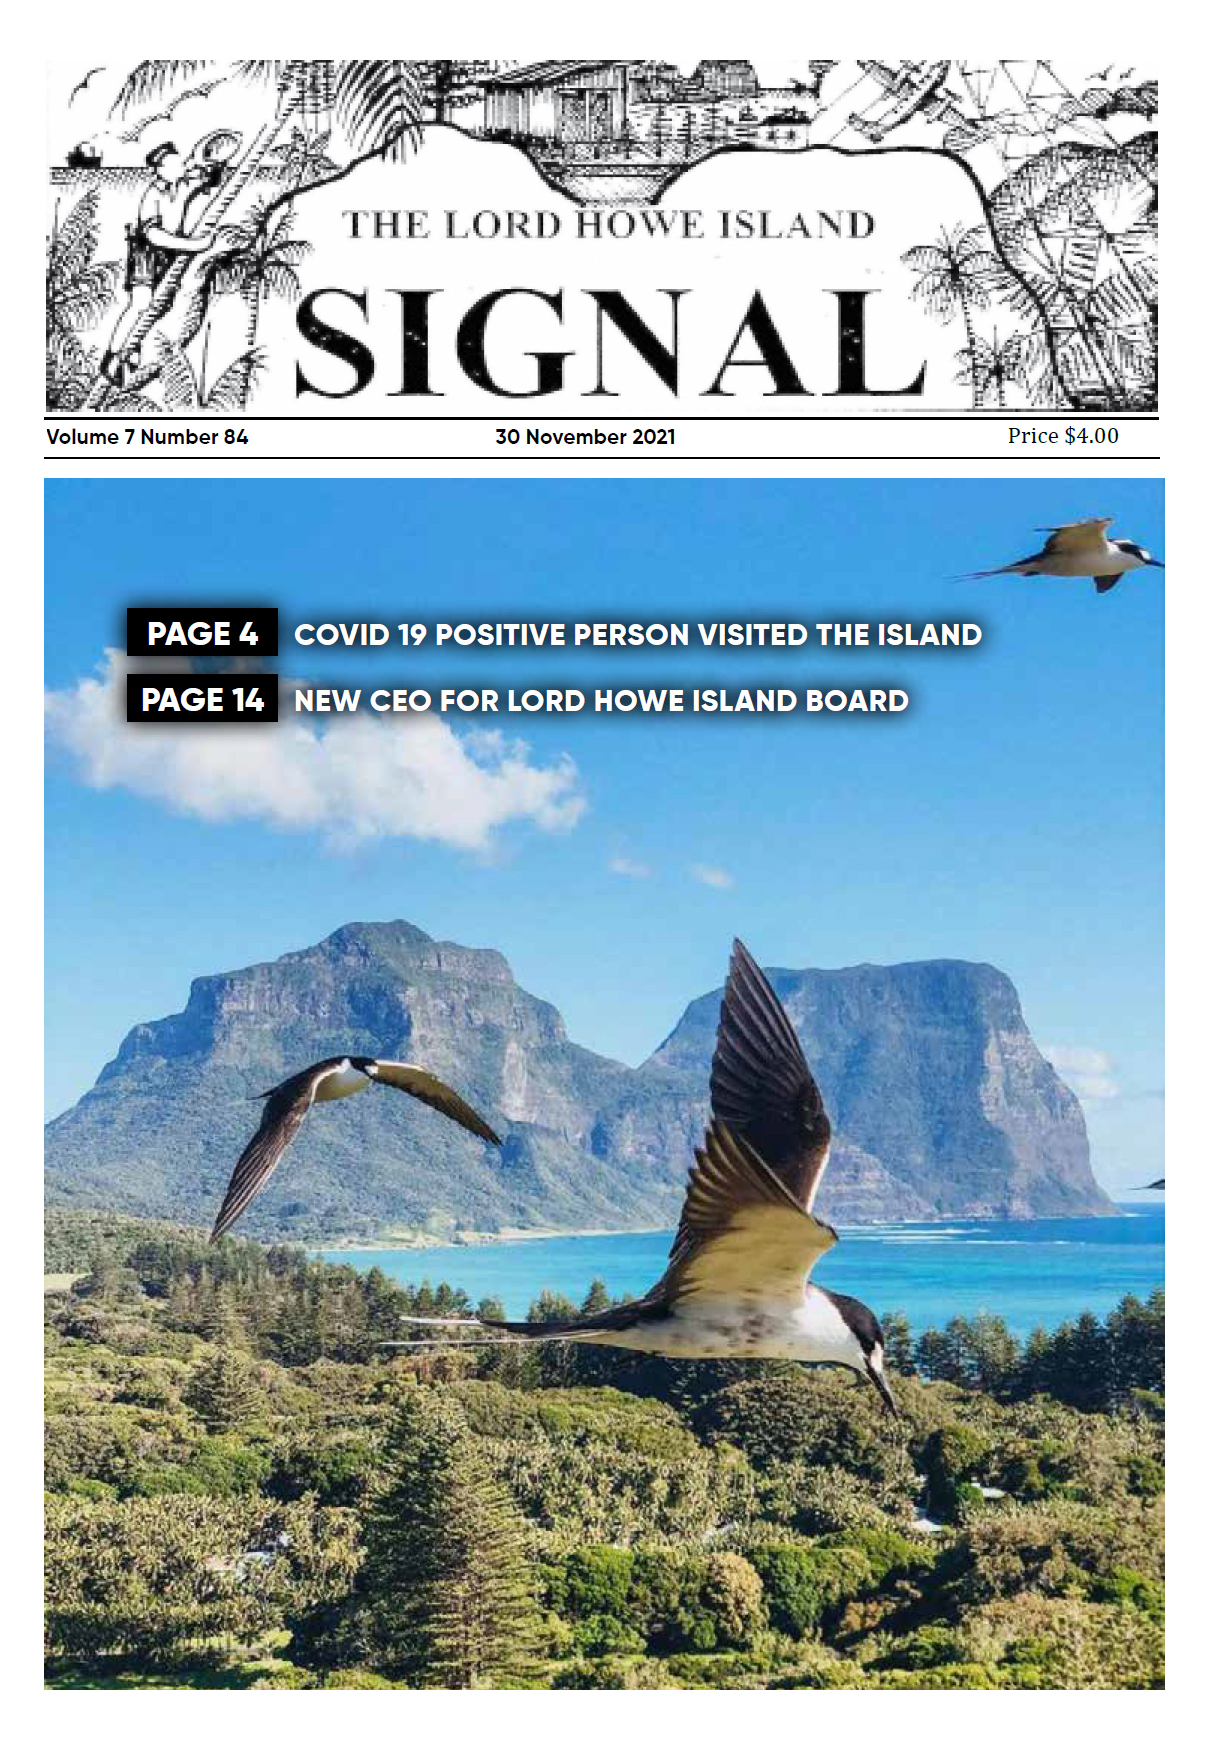 The Lord Howe Island Signal 30 November 2021